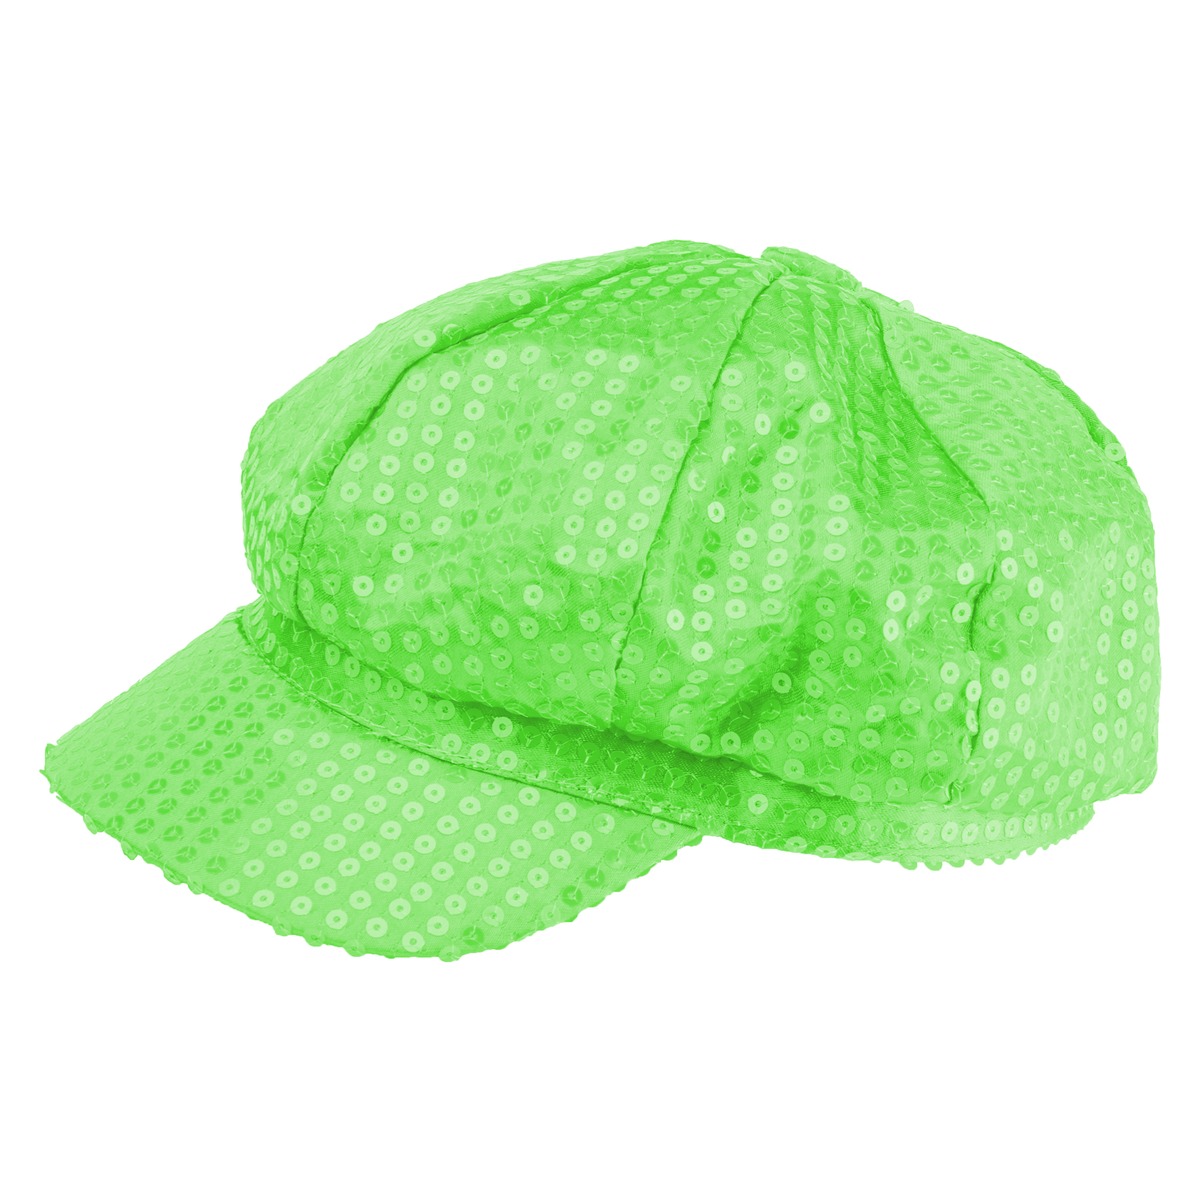 Chapeau zébrés vert fluo plastic - Chapeaux pas cher